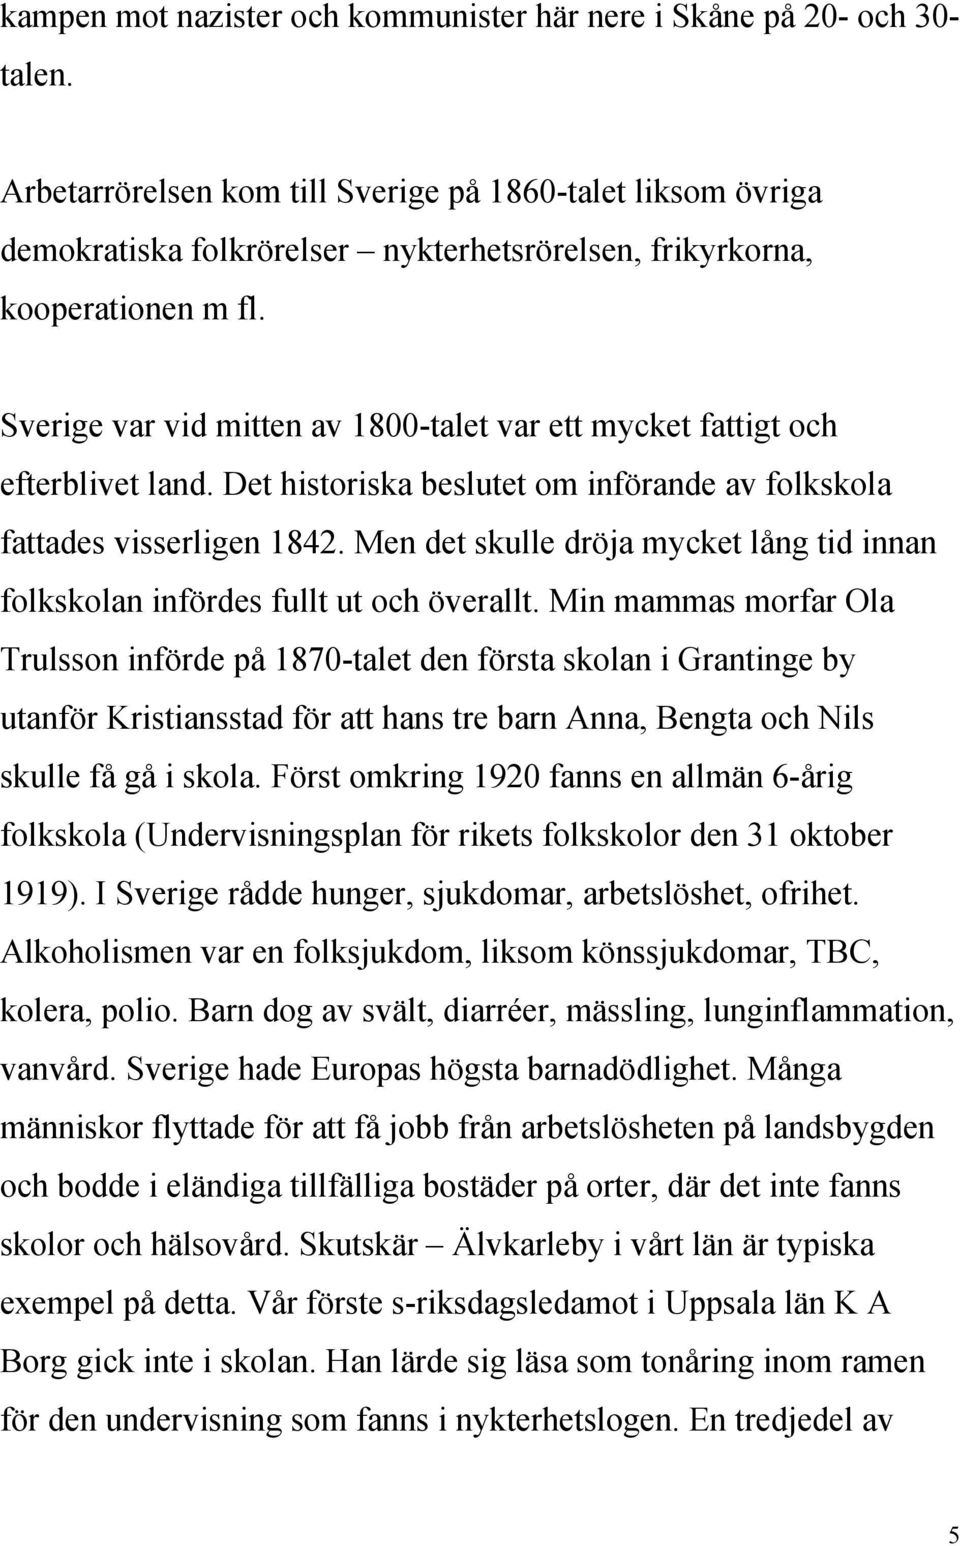 Sverige var vid mitten av 1800-talet var ett mycket fattigt och efterblivet land. Det historiska beslutet om införande av folkskola fattades visserligen 1842.